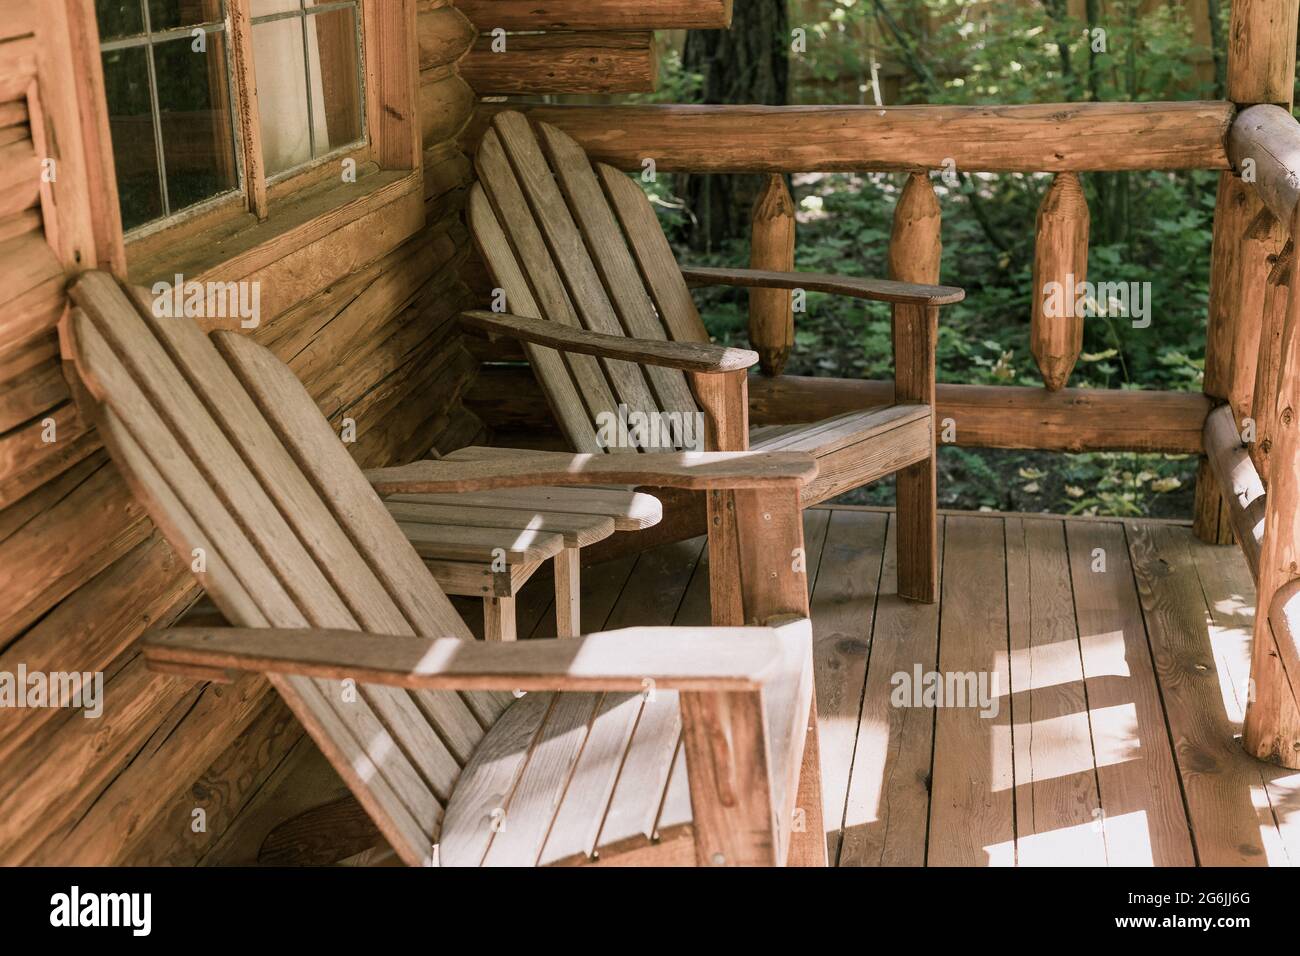 Patio rustique en bois de chalet avec chaises Adirondack en bois Banque D'Images